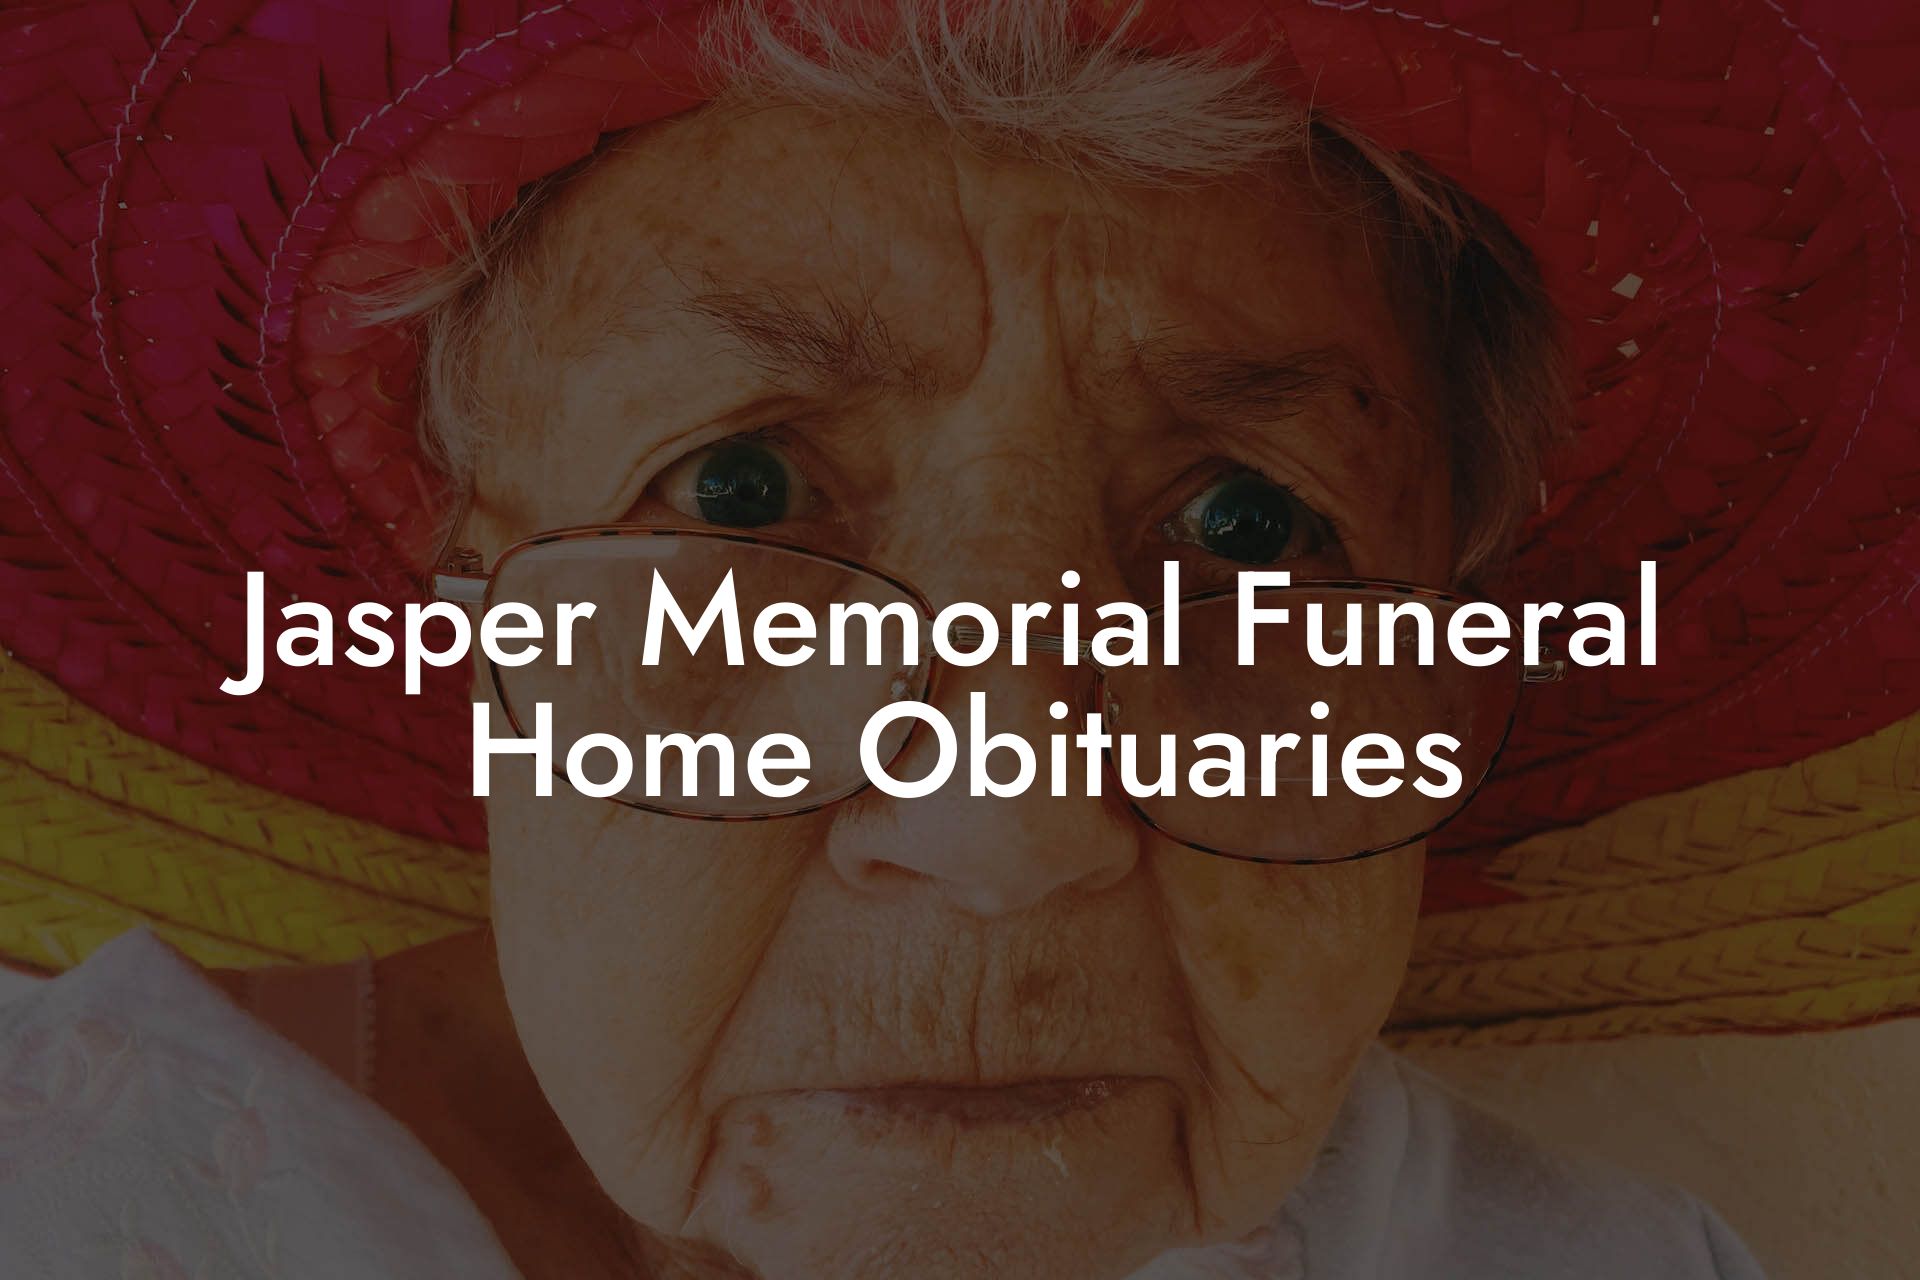 Jasper Memorial Funeral Home Obituaries